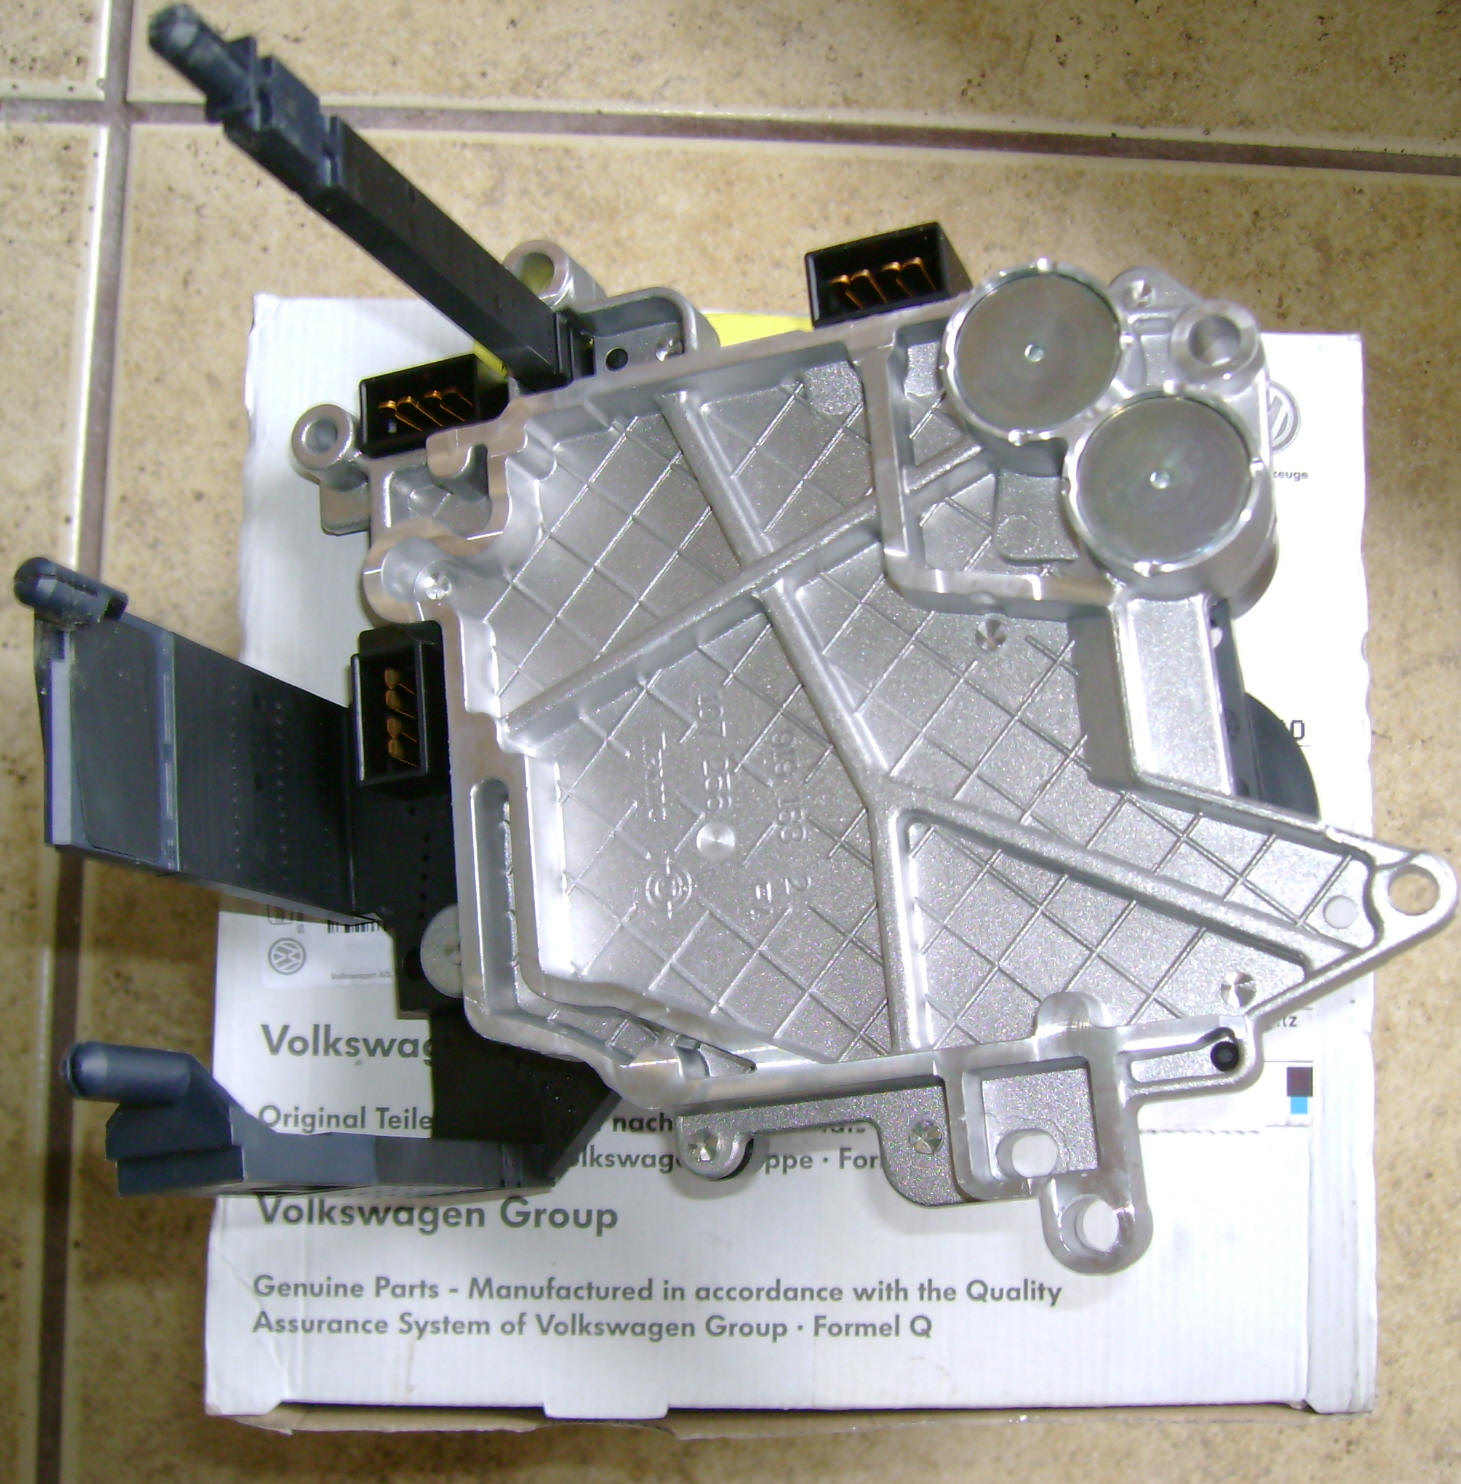 Modulo de cambio Audi  multitronic Conserto de modulo multitronic Reparo de modulo Multitronic Recondicionamento de modulo multitronic